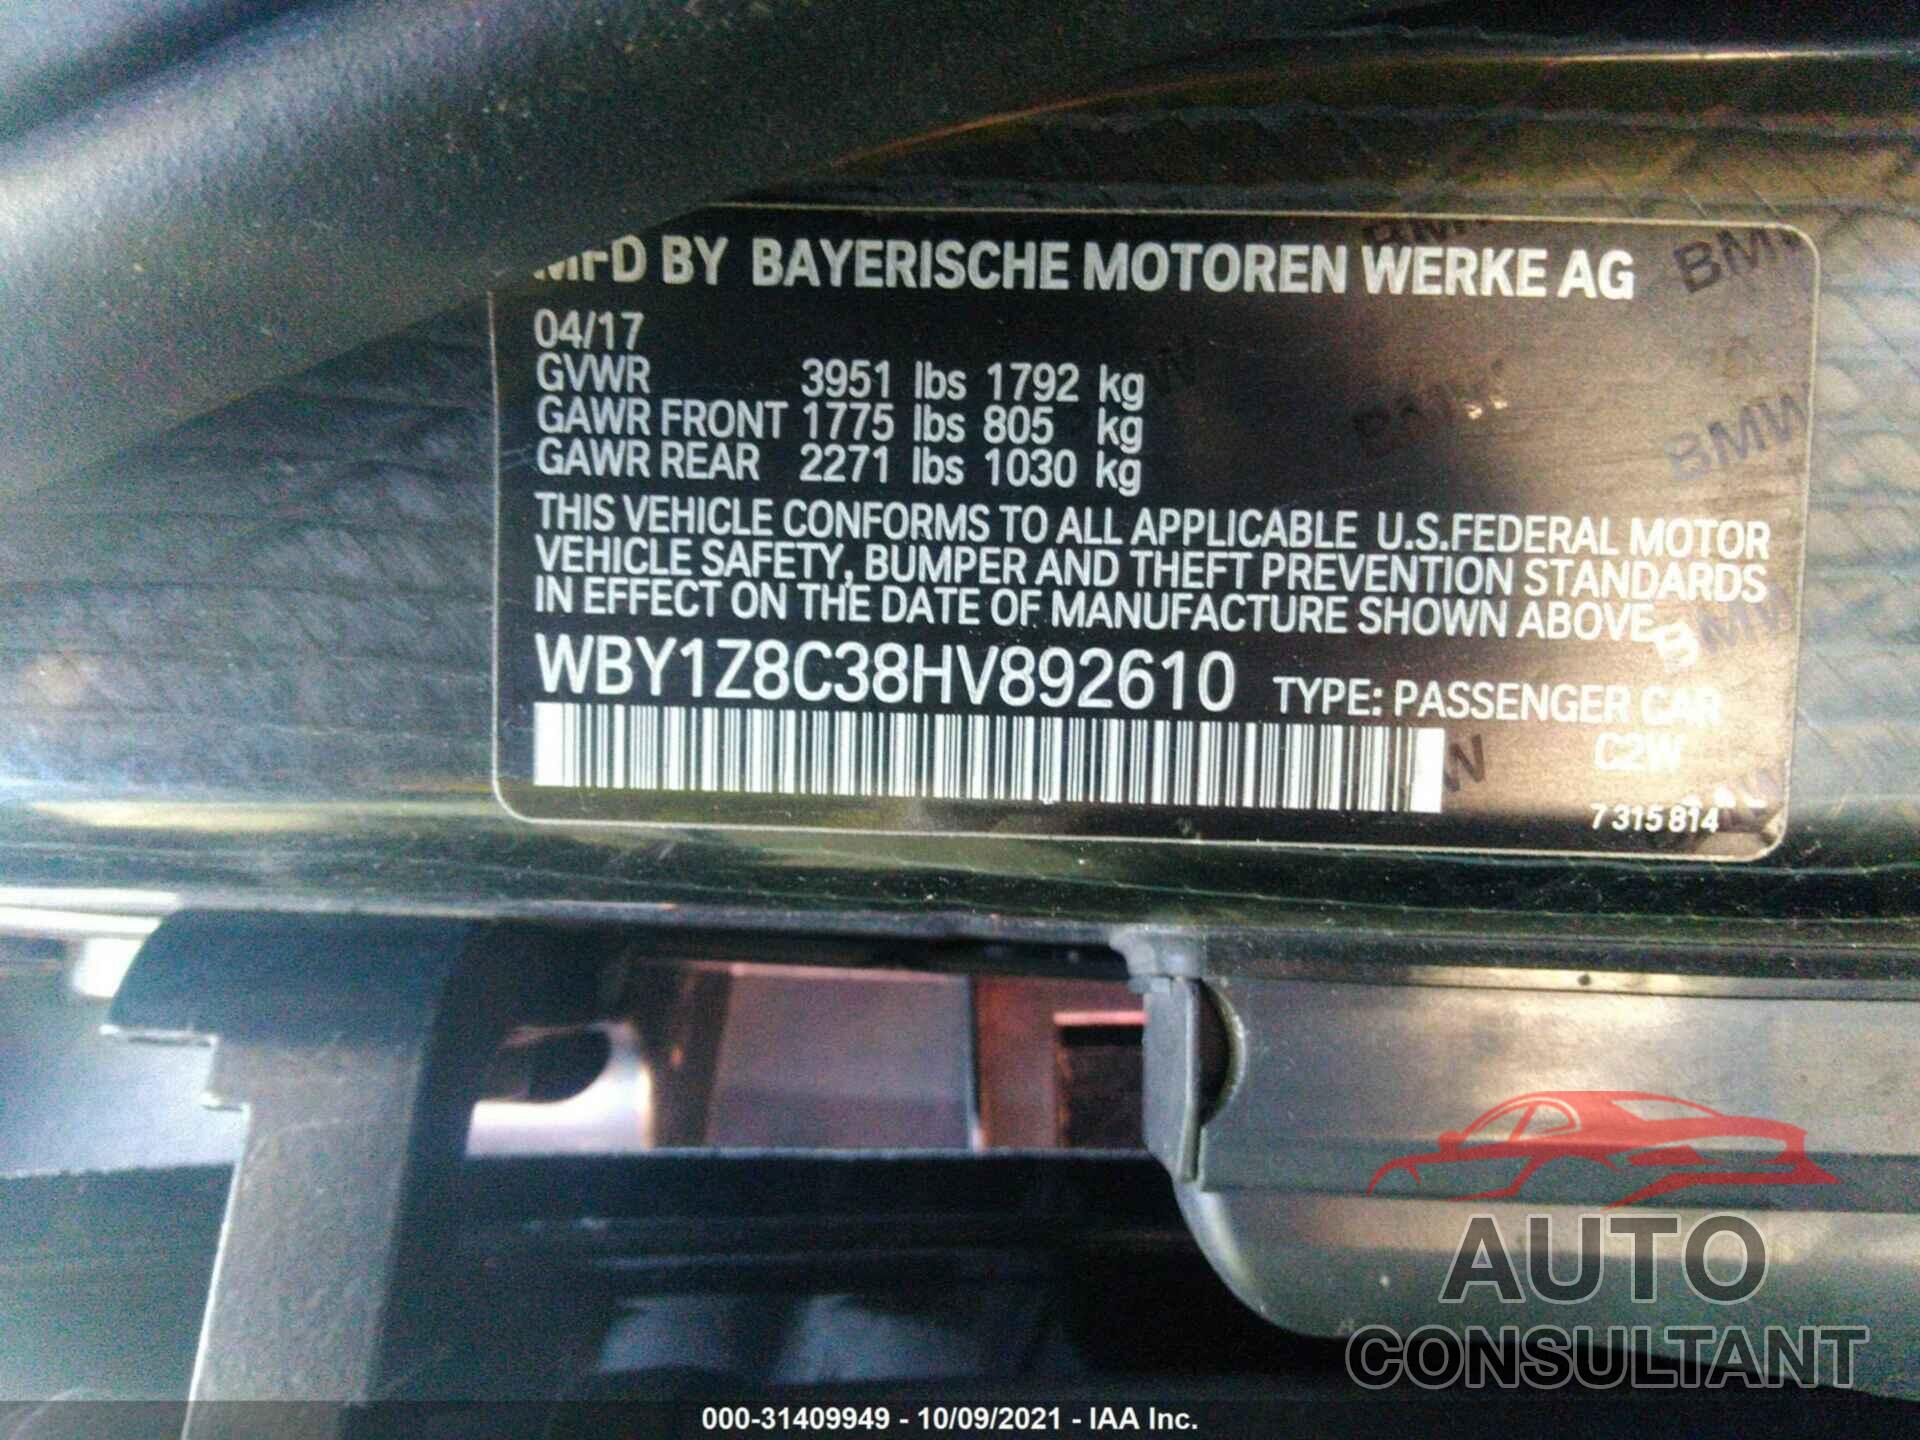 BMW I3 2017 - WBY1Z8C38HV892610